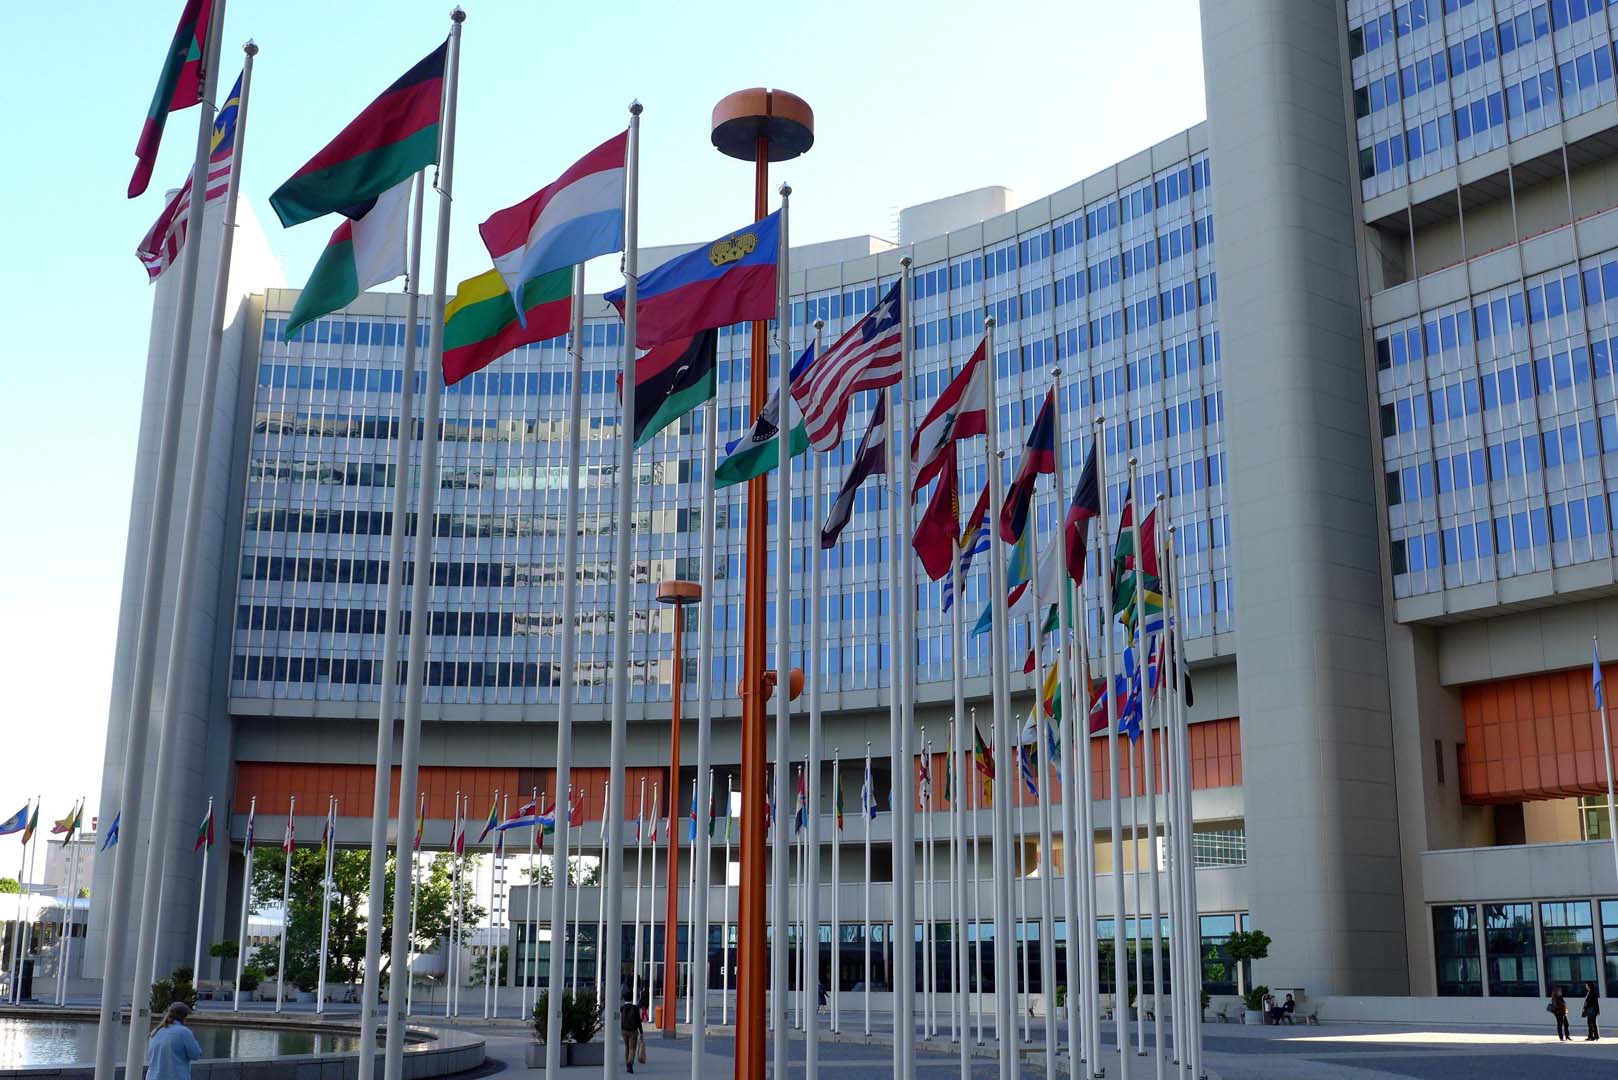 Das Gebäude der United Nations in Wien. Vor dem Gebäude sind die Flaggen aller Nationen der Vereinten Nationen zu sehen.